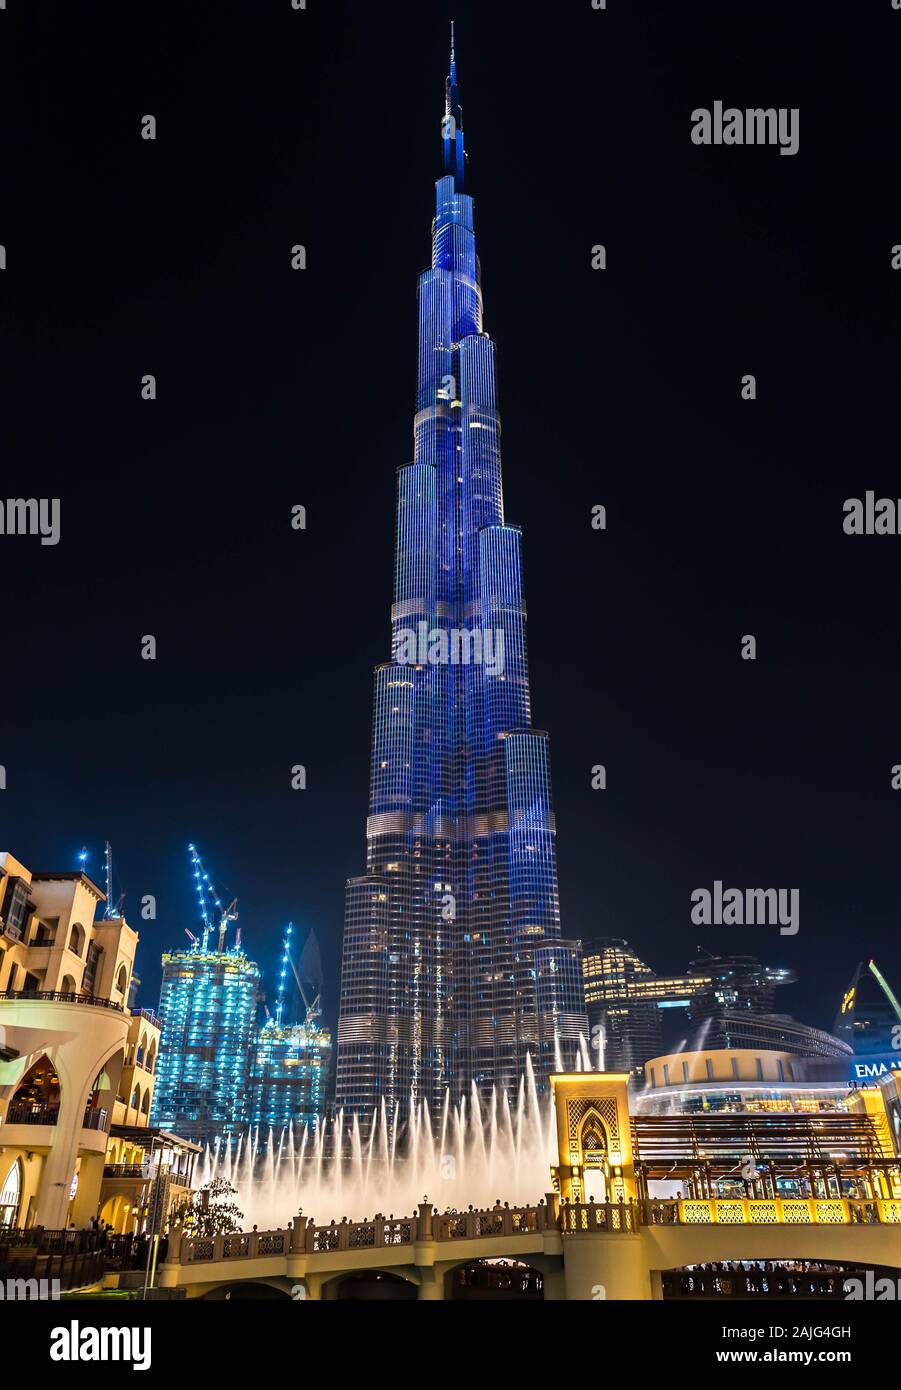 Dubai, Vereinigte Arabische Emirate: Erstaunliche futuristische Licht Show auf dem Burj Dubai, dem höchsten Gebäude Wolkenkratzer der Welt, bei Nacht beleuchteten Stockfoto